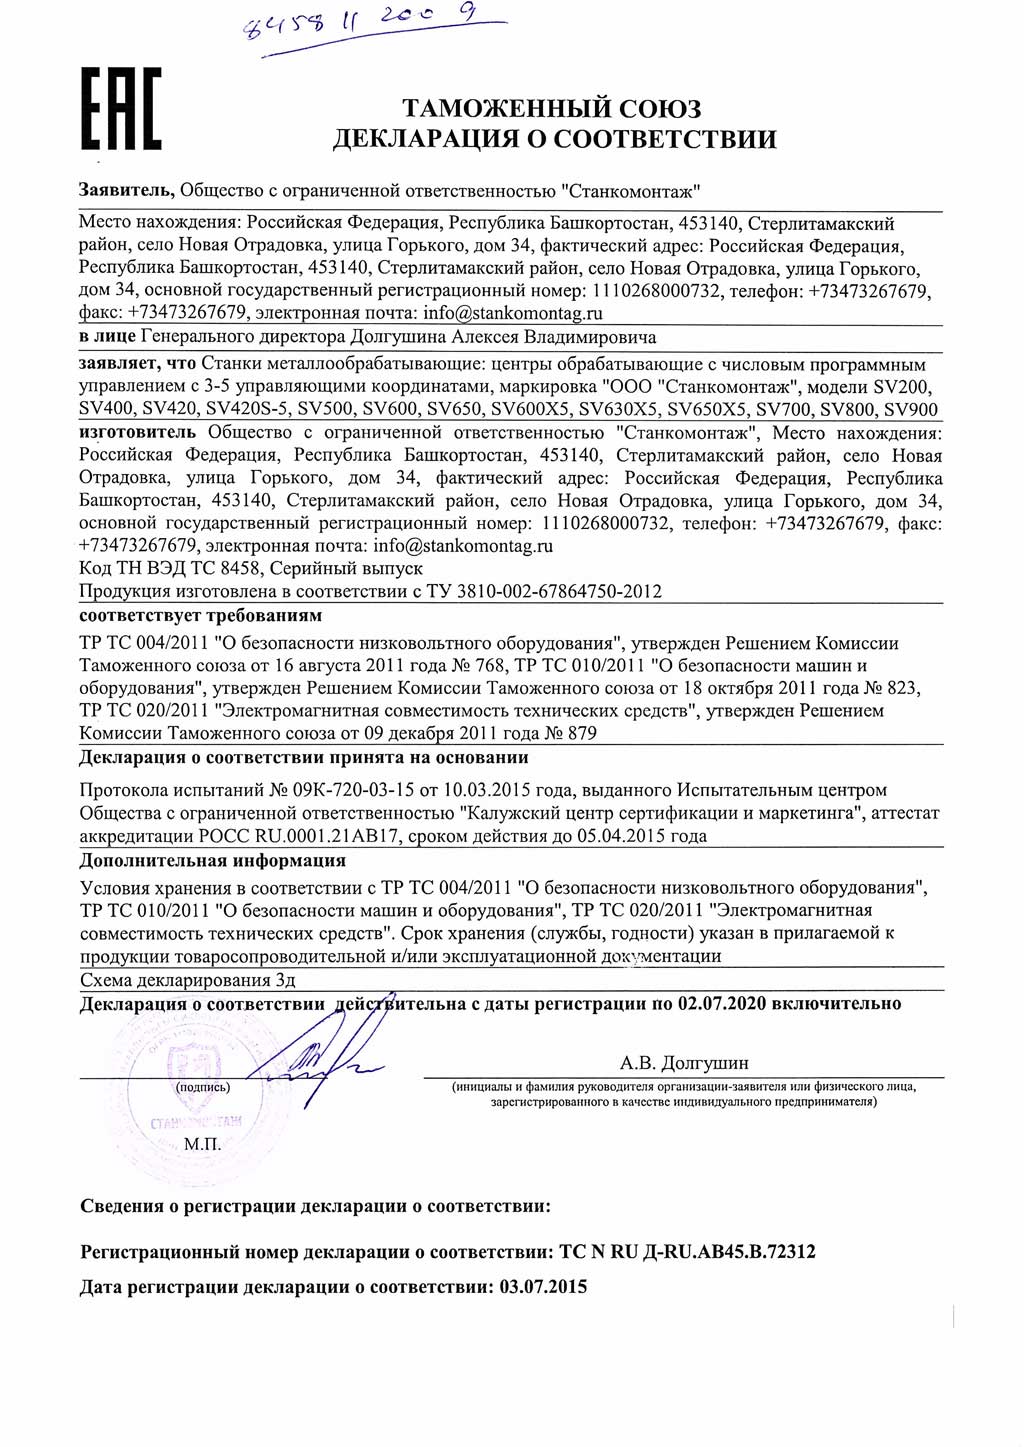 Сертификат на обрабатывающие центры производства Станкомонтаж